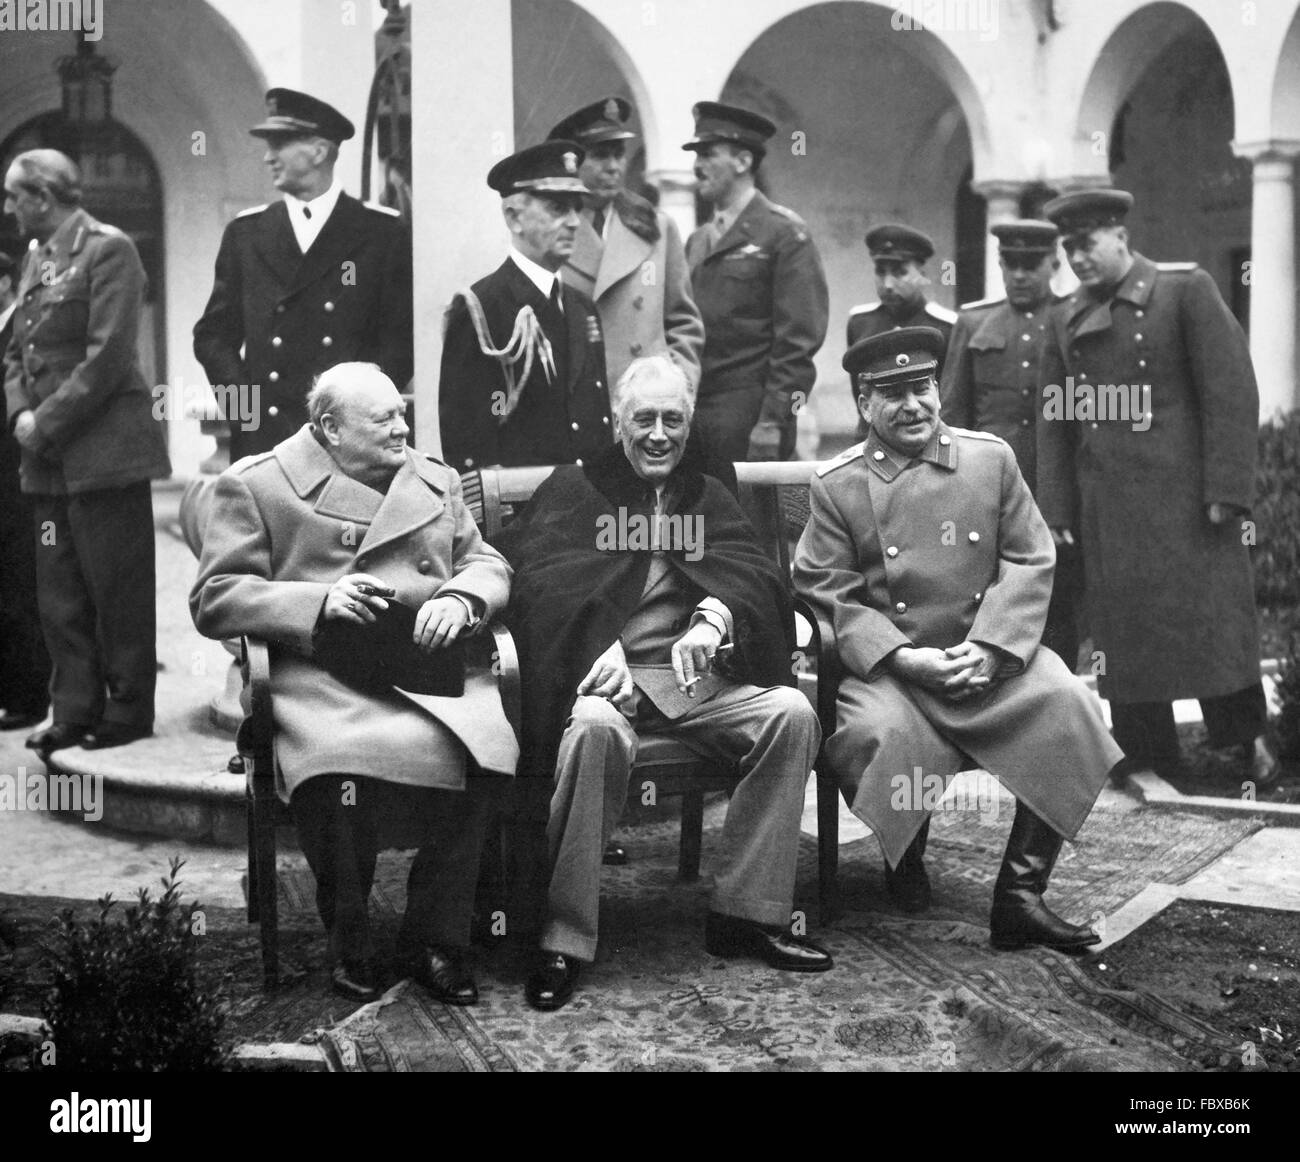 Conferenza di Yalta, febbraio 1945. Il Primo ministro inglese Winston Churchill, noi Pesident Franklin D Roosevelt e il Premier sovietico Josef Stalin incontro presso i " tre grandi " Conferenza di Yalta nel febbraio 1945, facendo piani per la definitiva sconfitta della Germania nazista Foto Stock